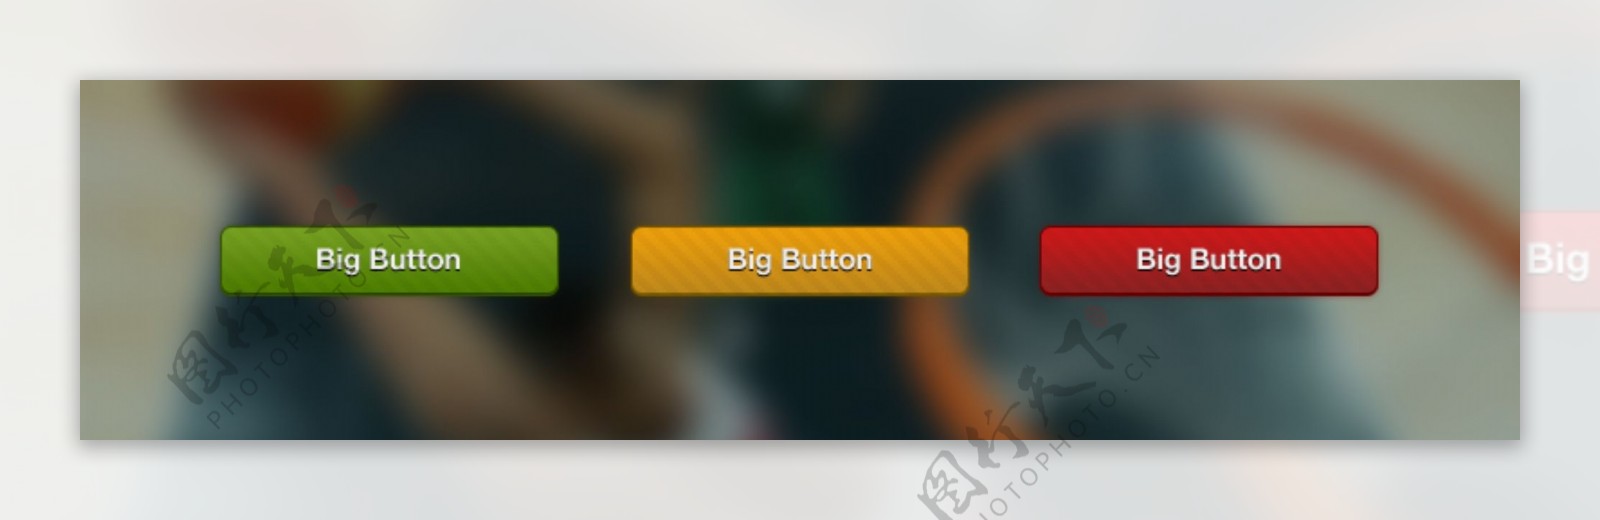 3彩色纹理的大界面按钮设置PSD